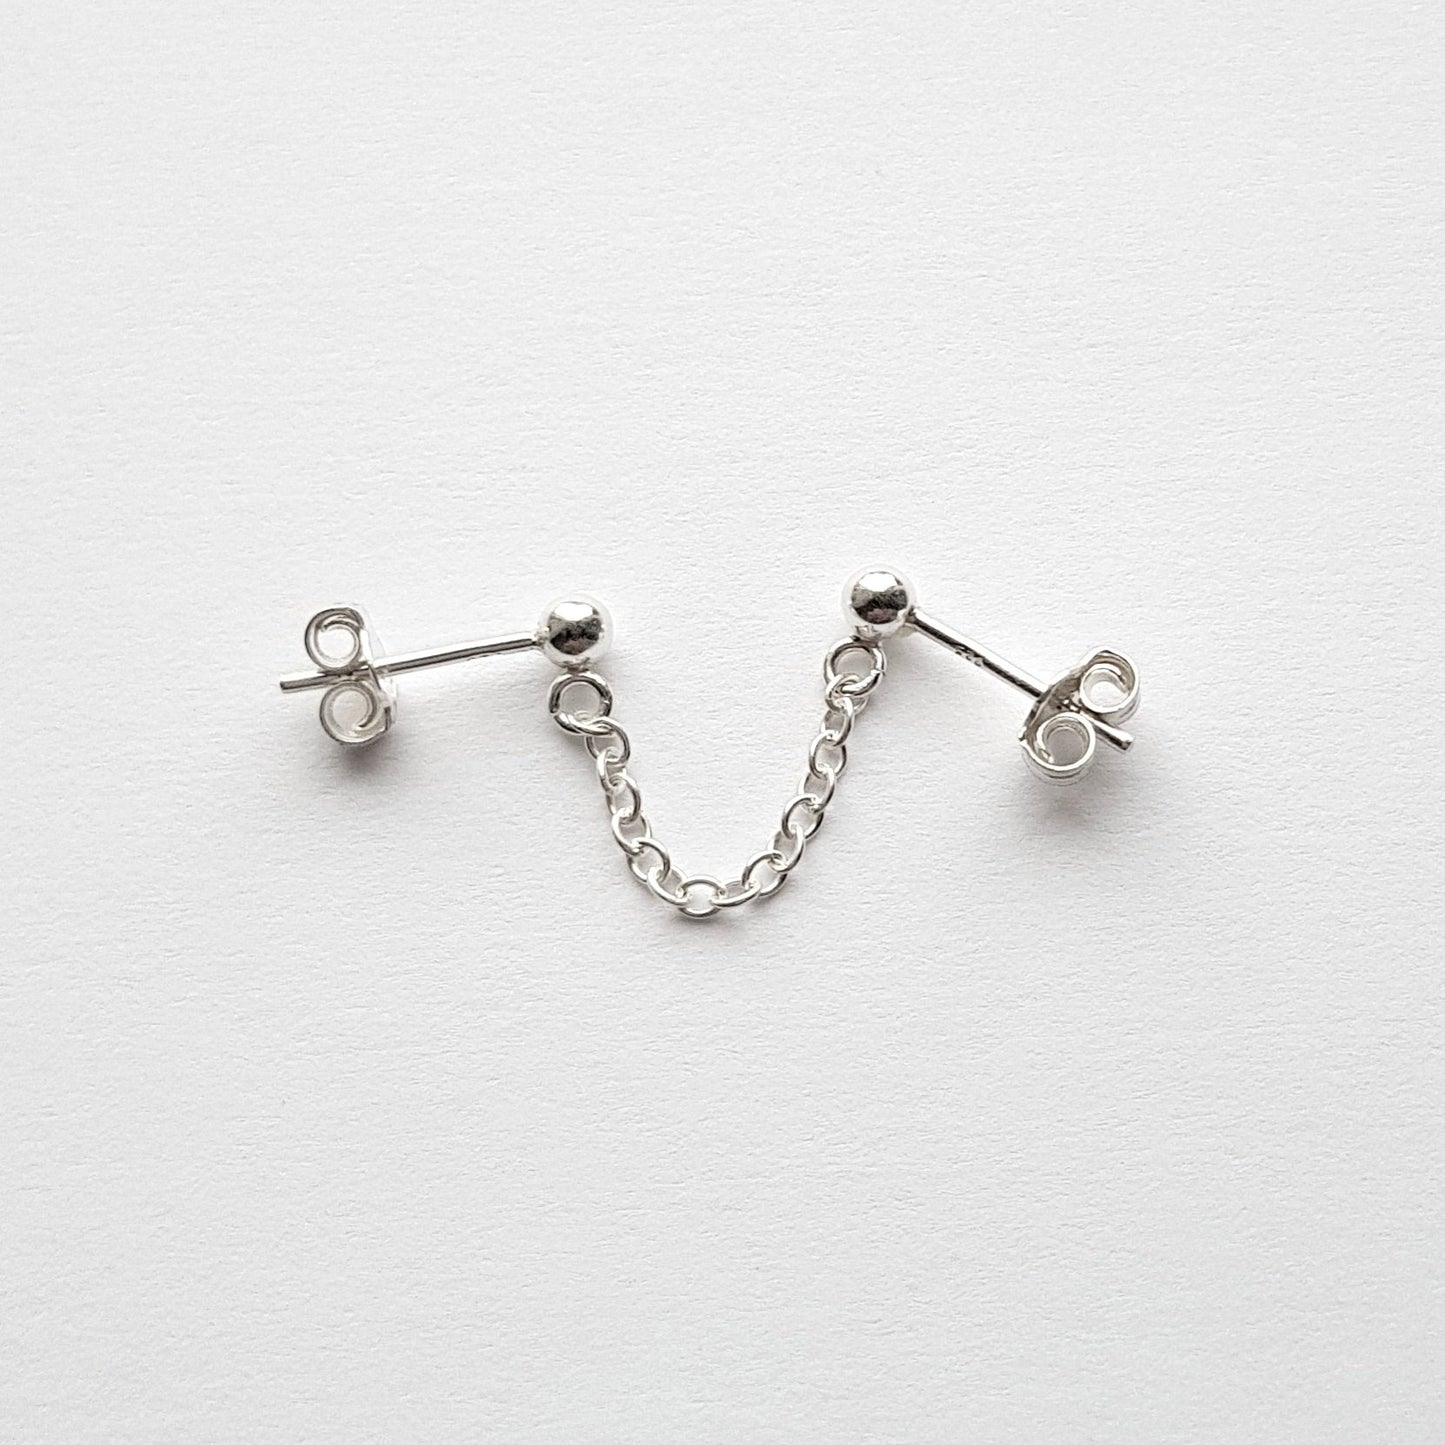 Sterling Silver Double Lobe Chain Earring. Connected Earring Single Earring.